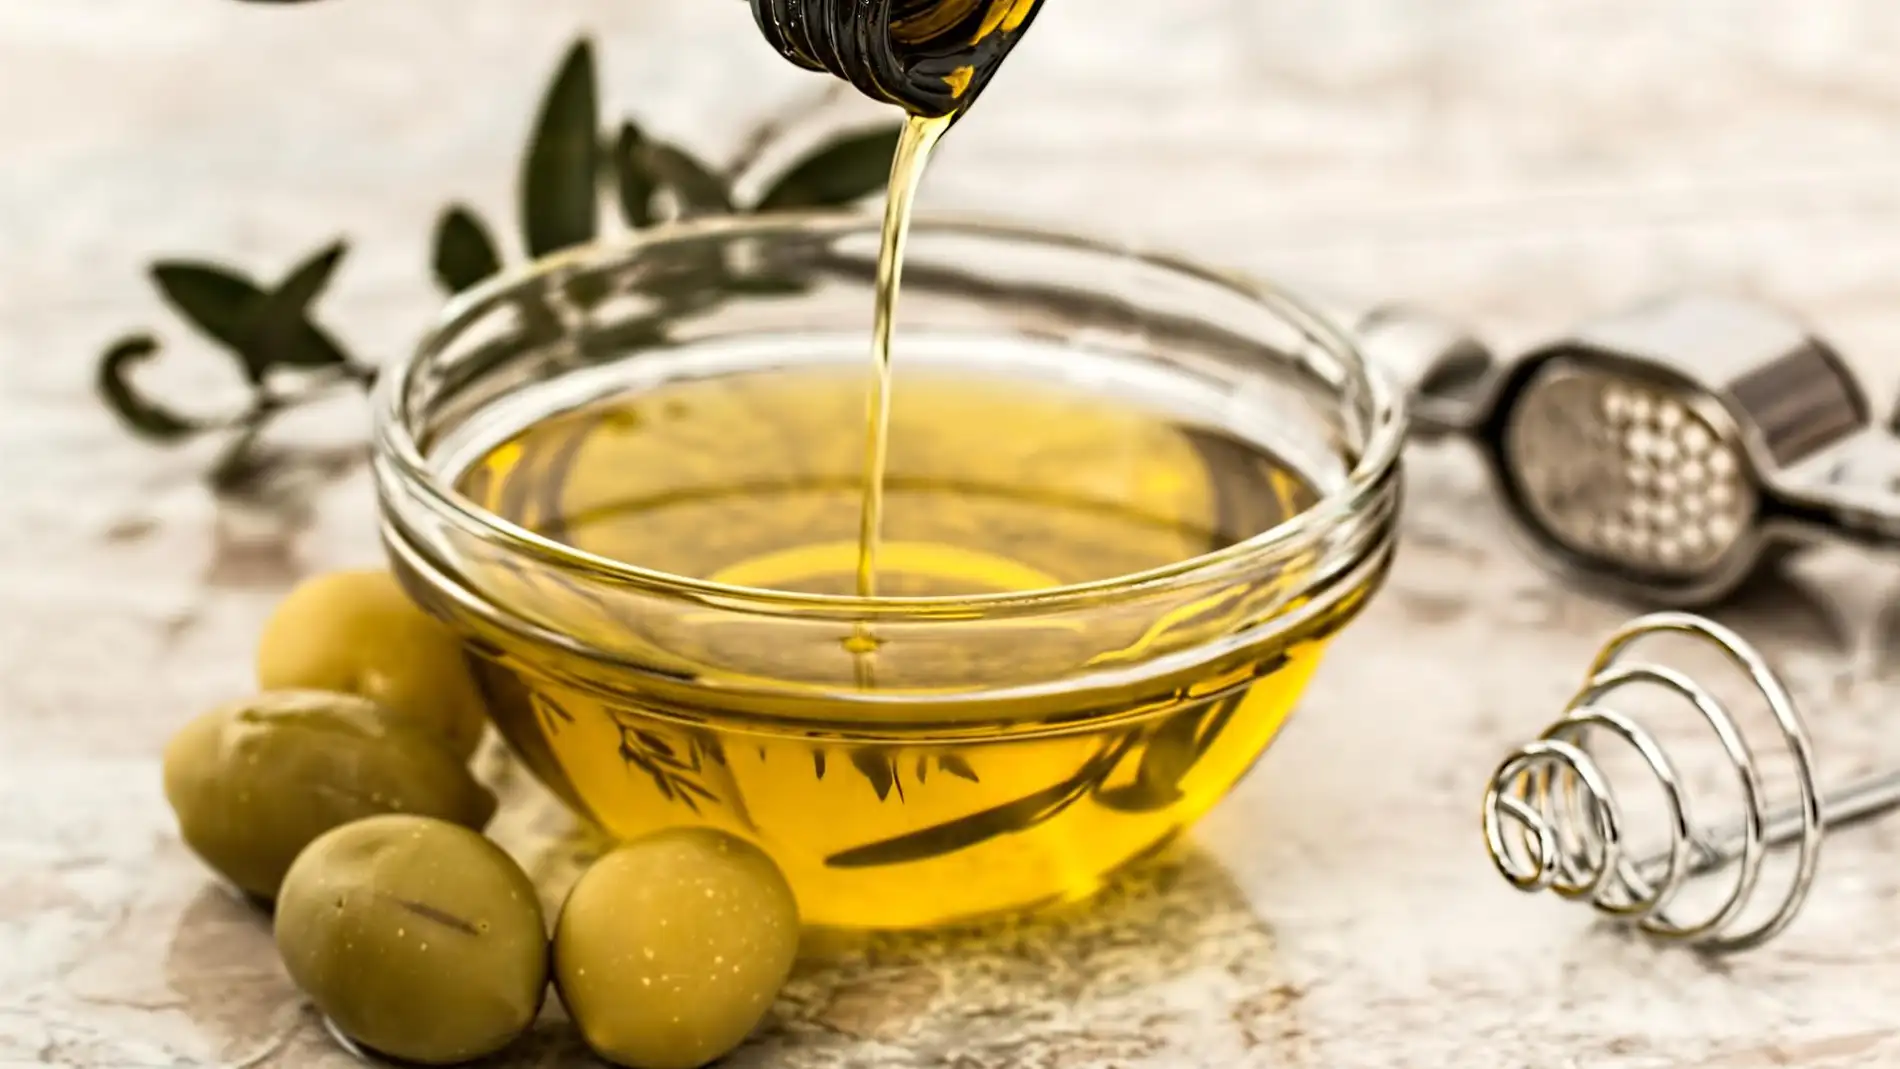 Seguridad alimentaria ha intervenido nueve marcas de aceite de oliva por carecer de registro sanitario